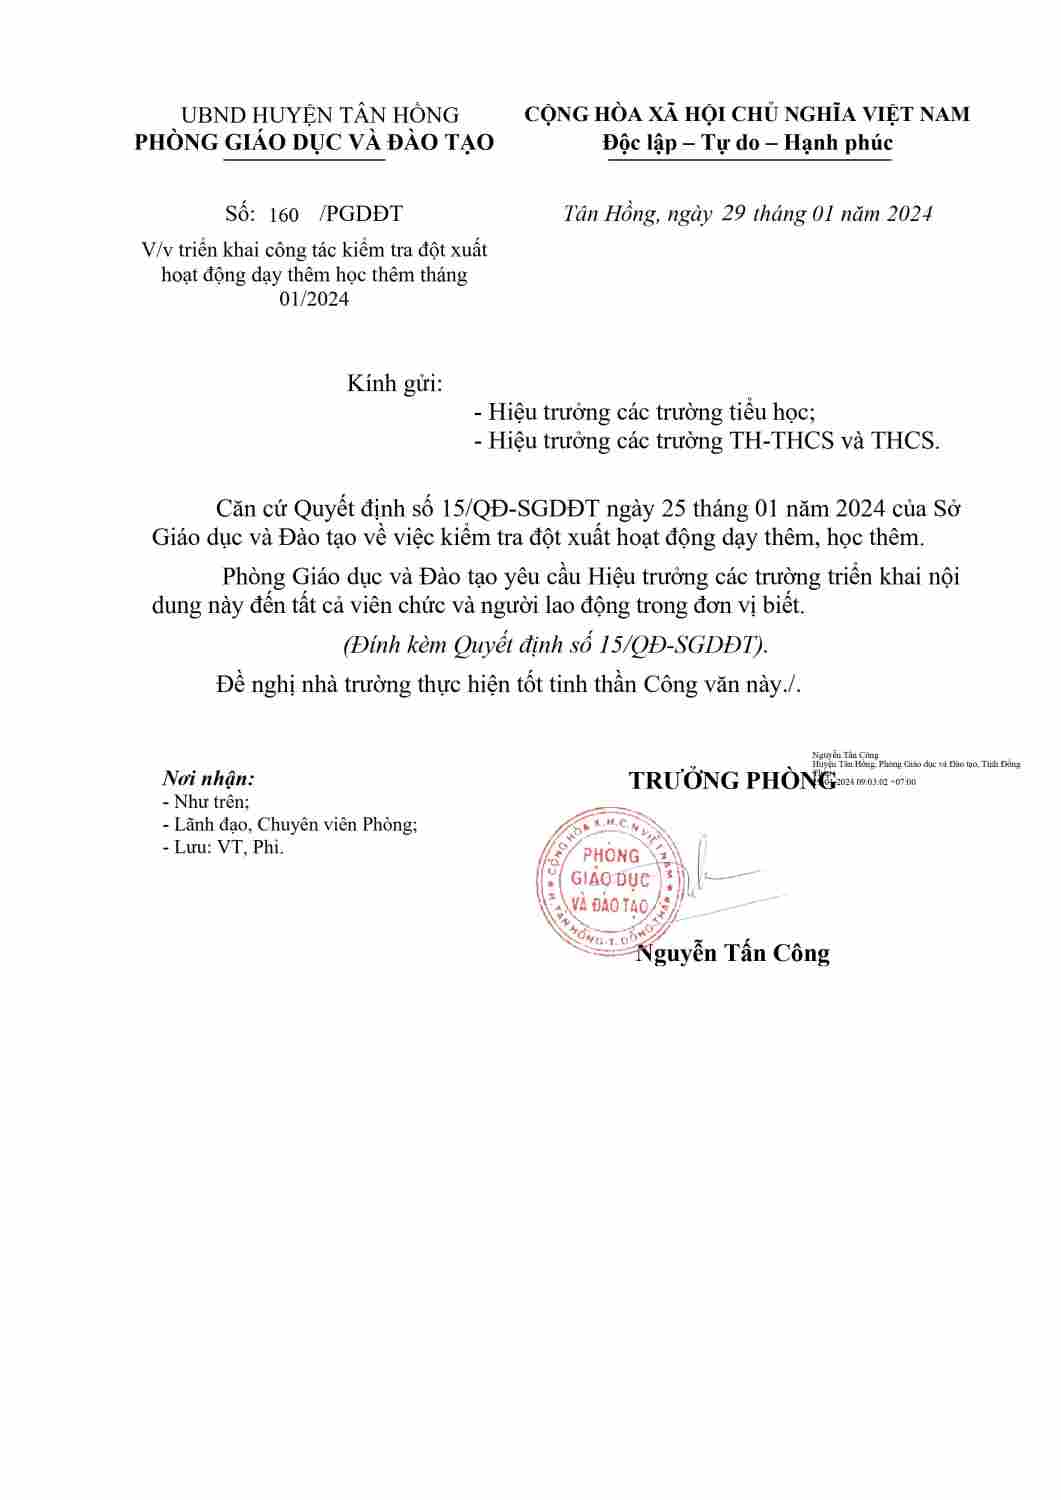 Copy of CONG VAN TRIEN KHAI VIEC KIEM TRA DOT XUAT DTHT 01-2024